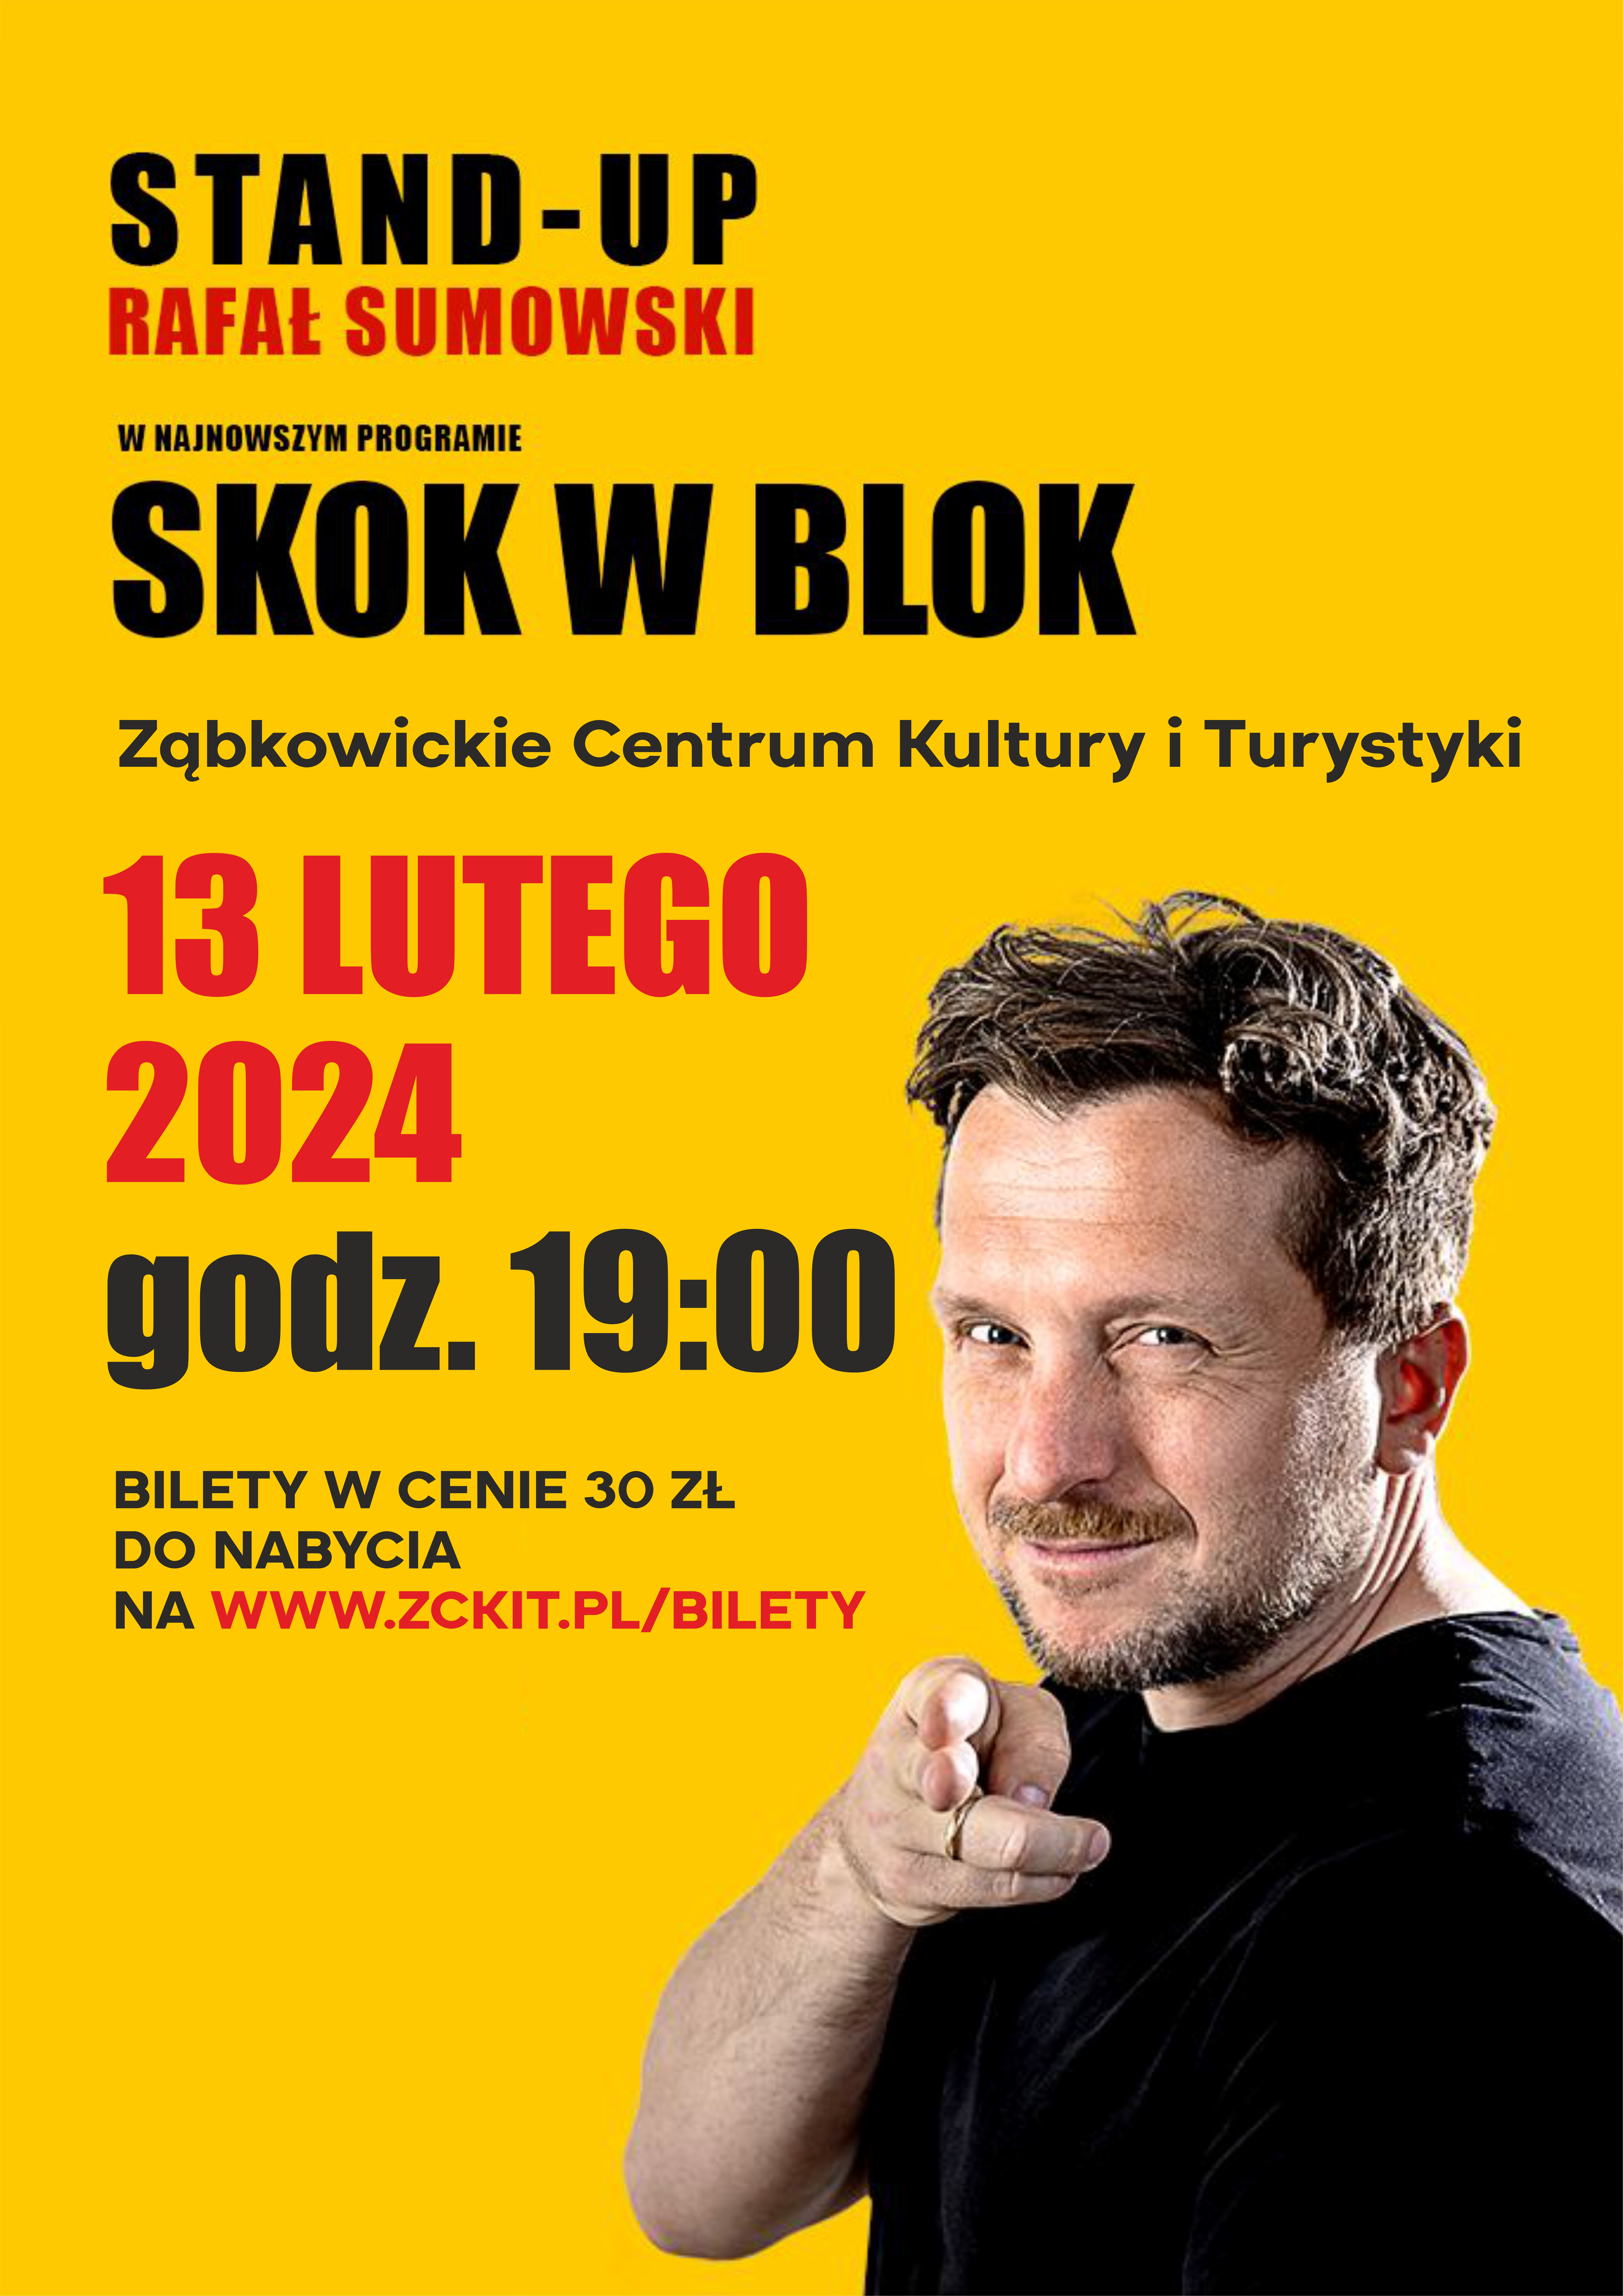 Plakat informacyjny o stand-upie Rafała Sumowskiego "Skok w bok" w Ząbkowickim Centrum Kultury i Turystyki 13 lutego 2024 o godzinie 19:00. Na plakacie znajduje się mężczyzna w brązowych włosach i zaroście, wskazujący dwoma palcami w kamerę.